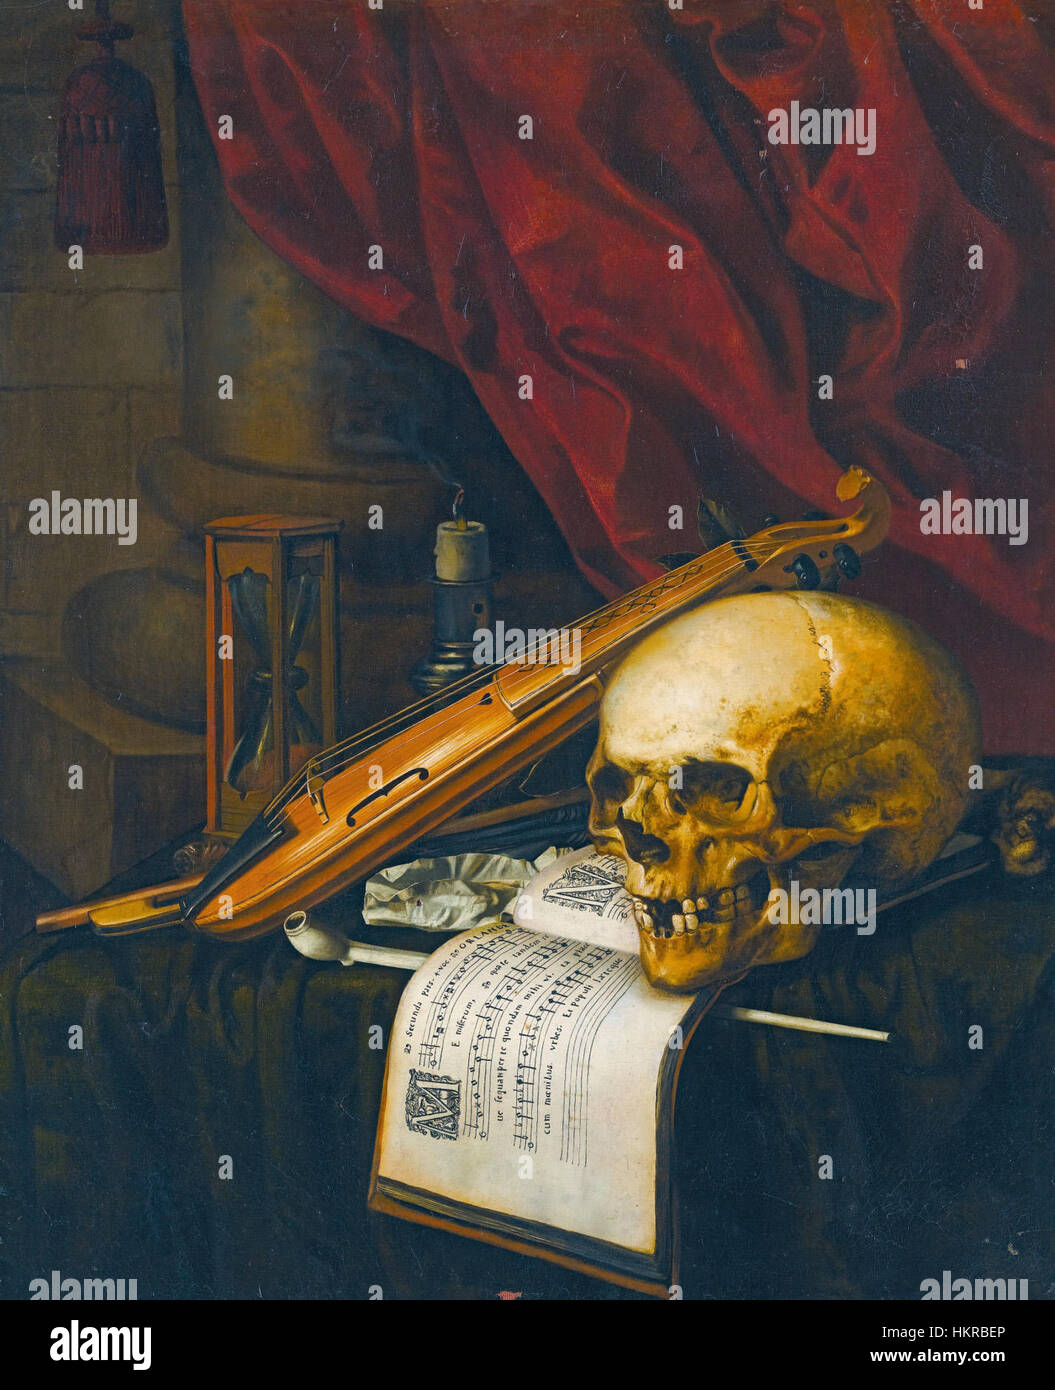 Carstian Luyckx - Vanitas still life avec un crâne, un violon, une partition musicale, une pipe et du tabac, un sablier et une bougie sur une table drapée Banque D'Images